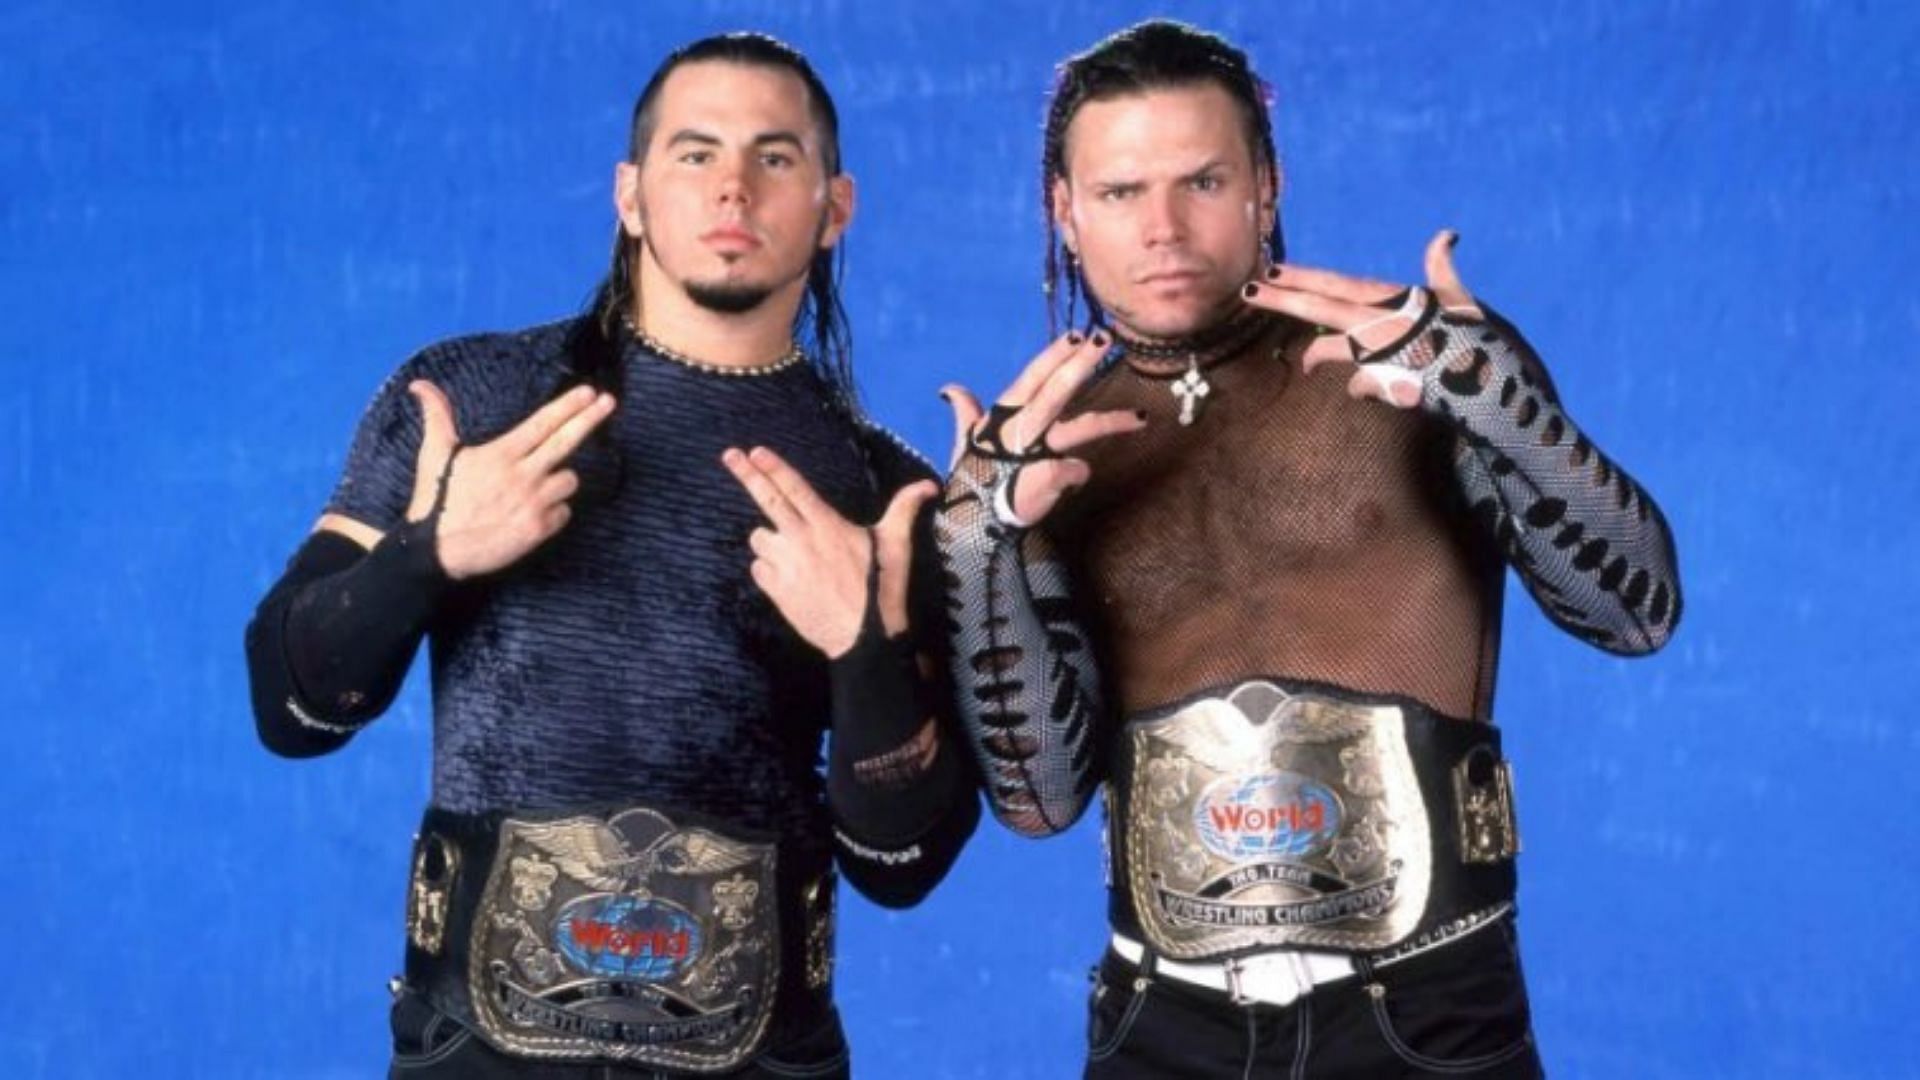 The Hardys during the WWE Attitude Era!